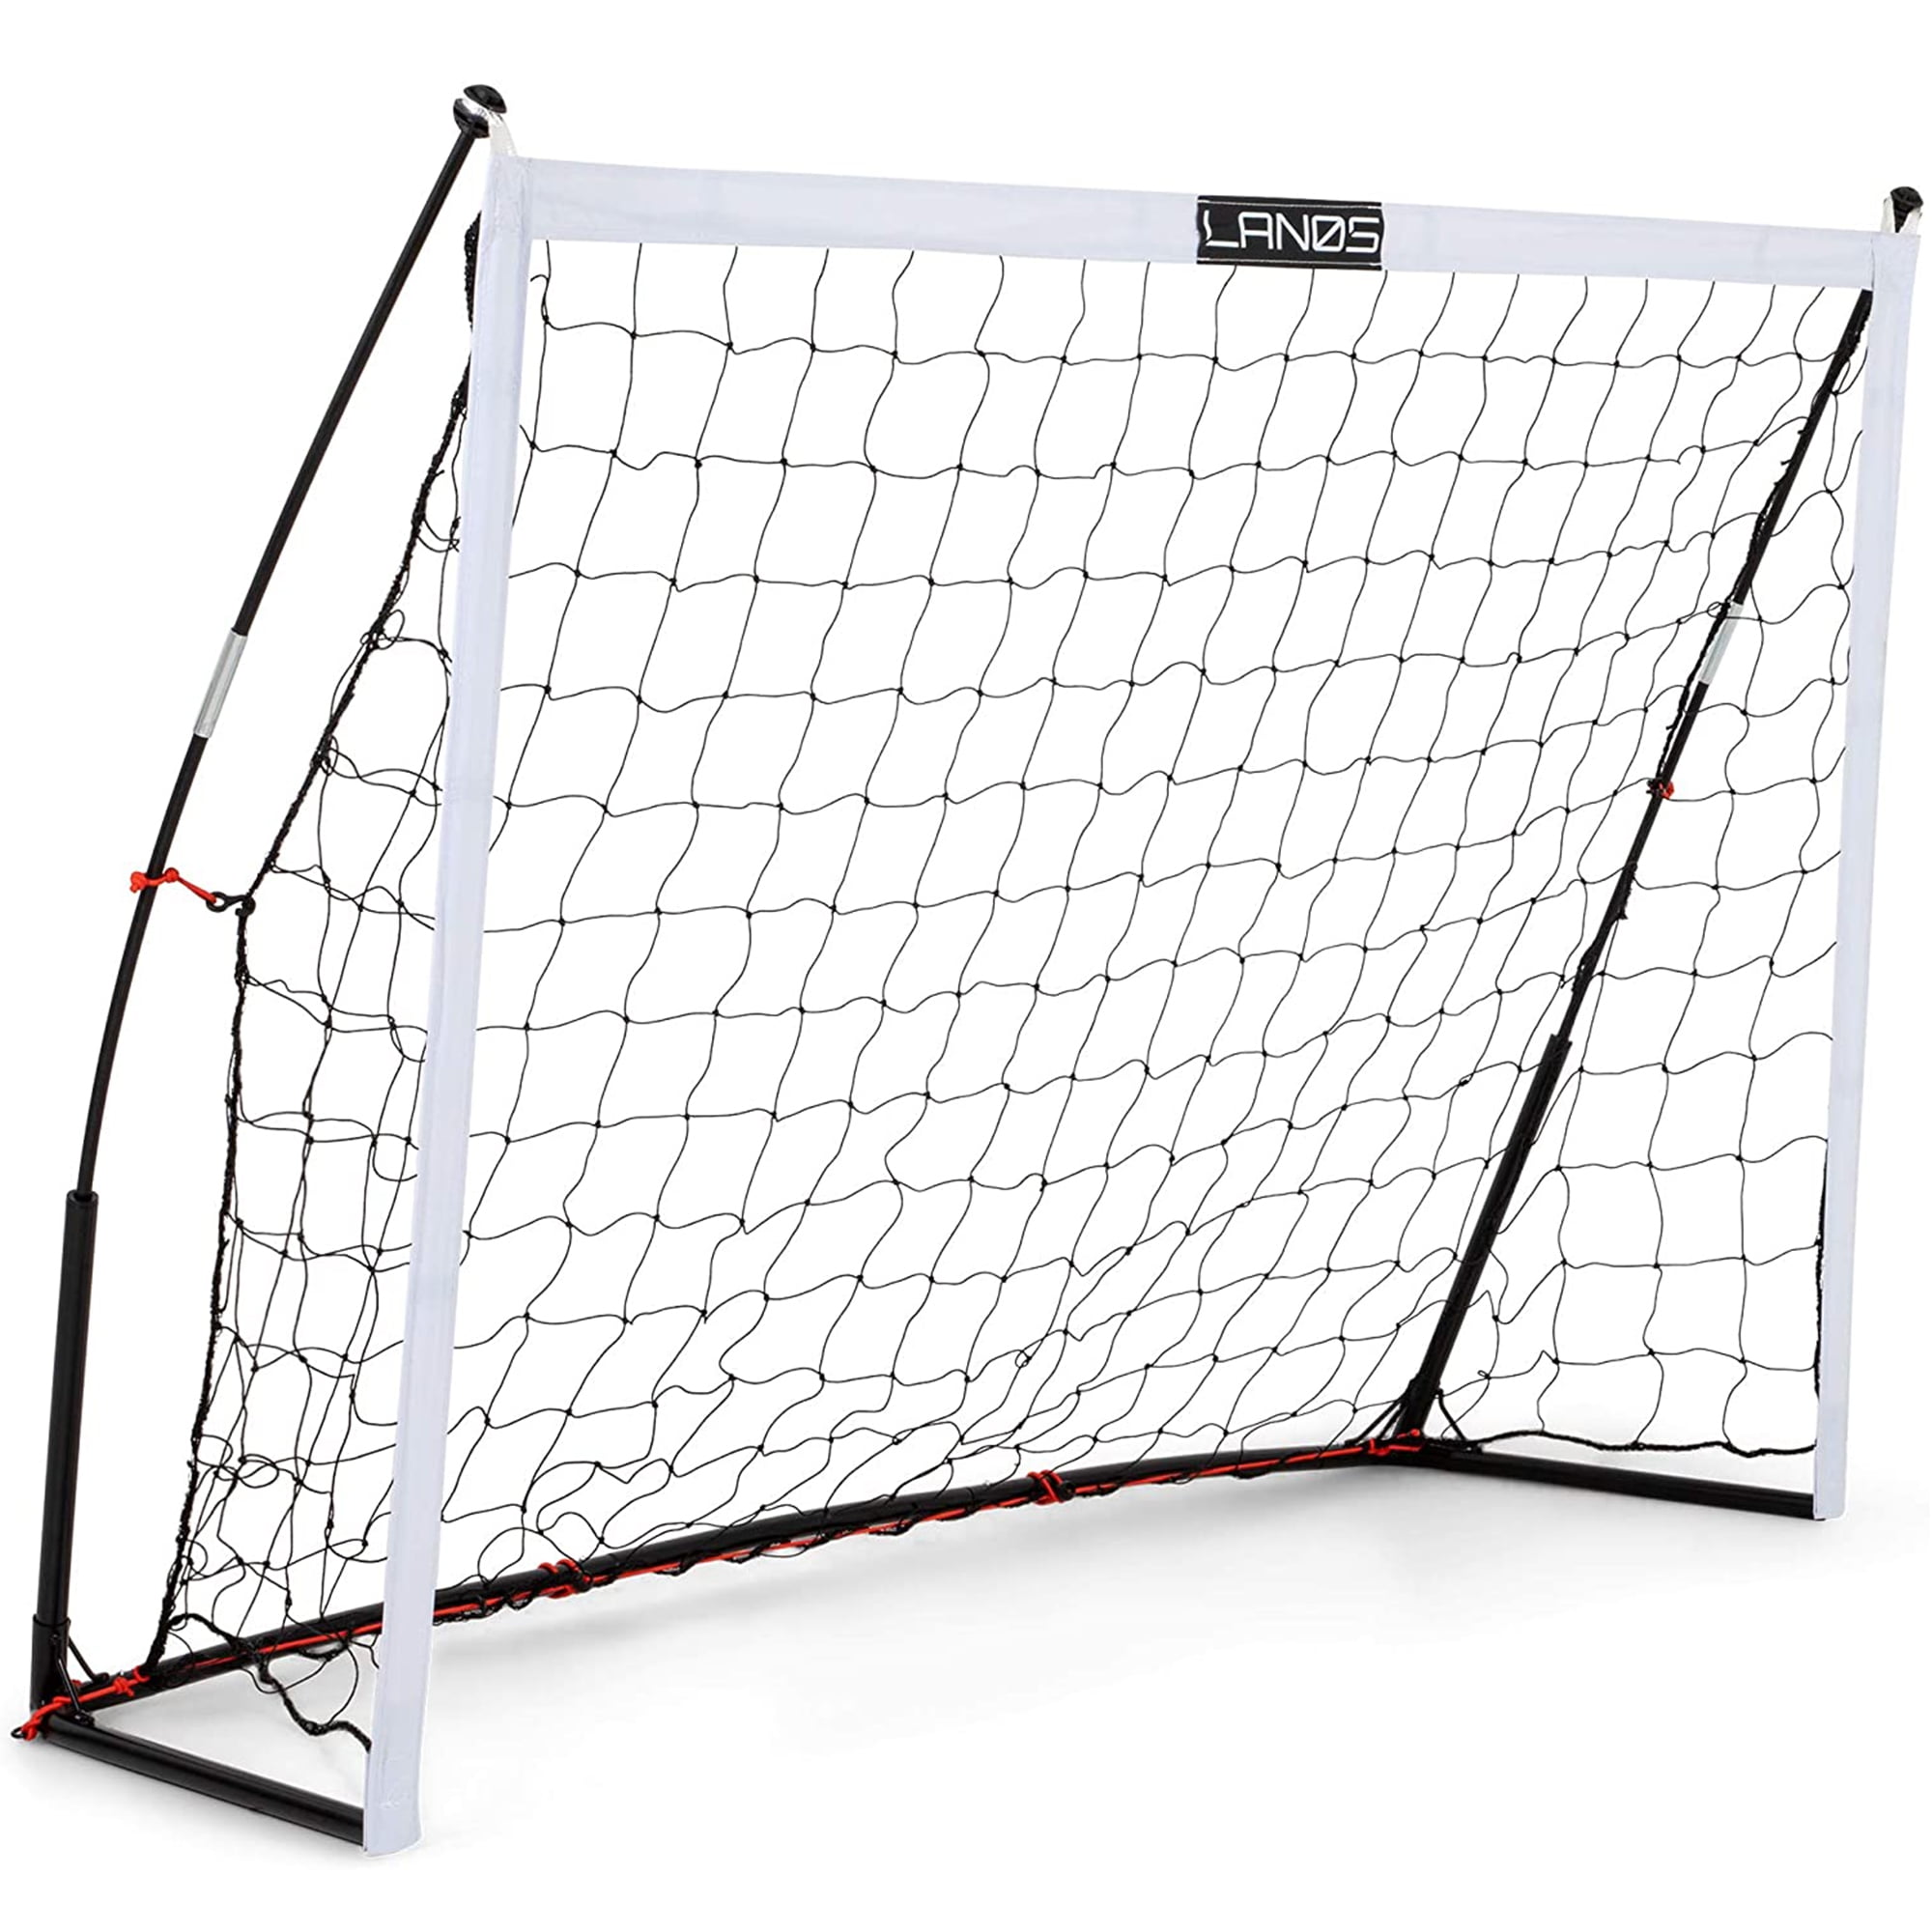 Football Soccer Goal Post Net 6x4/8x5/12x6ft For Outdoor Football Match Training 